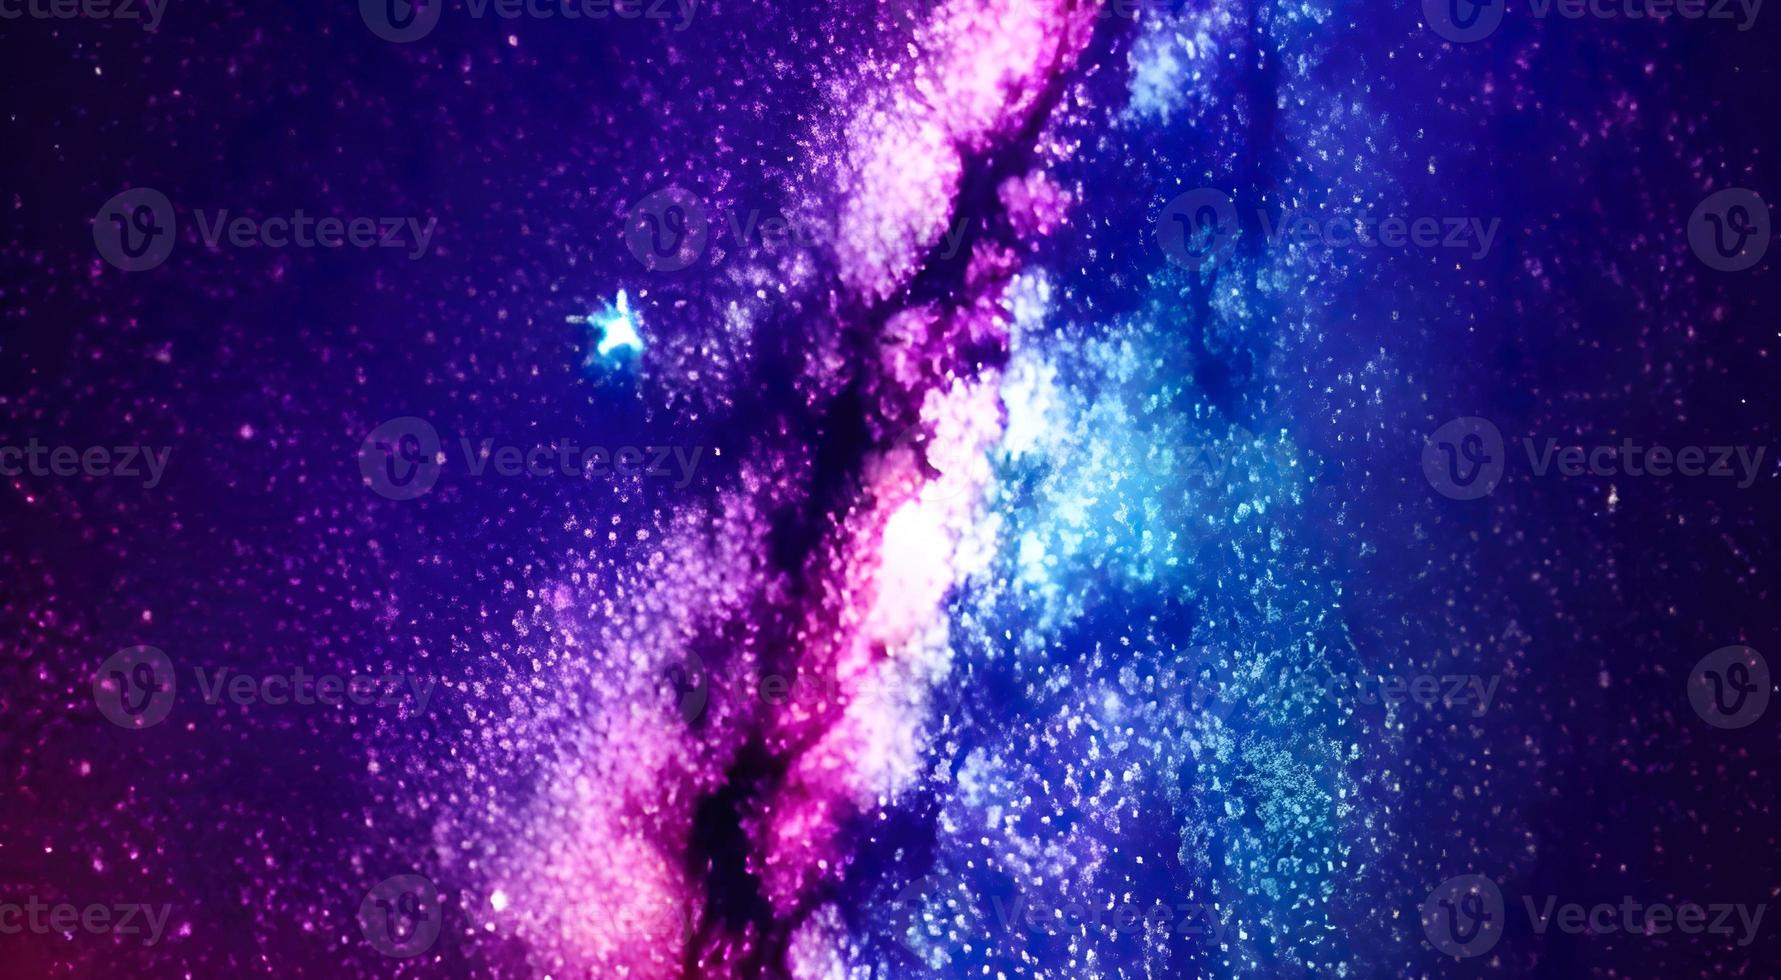 hermoso espacio coloreado con estrellas. foto de alta calidad